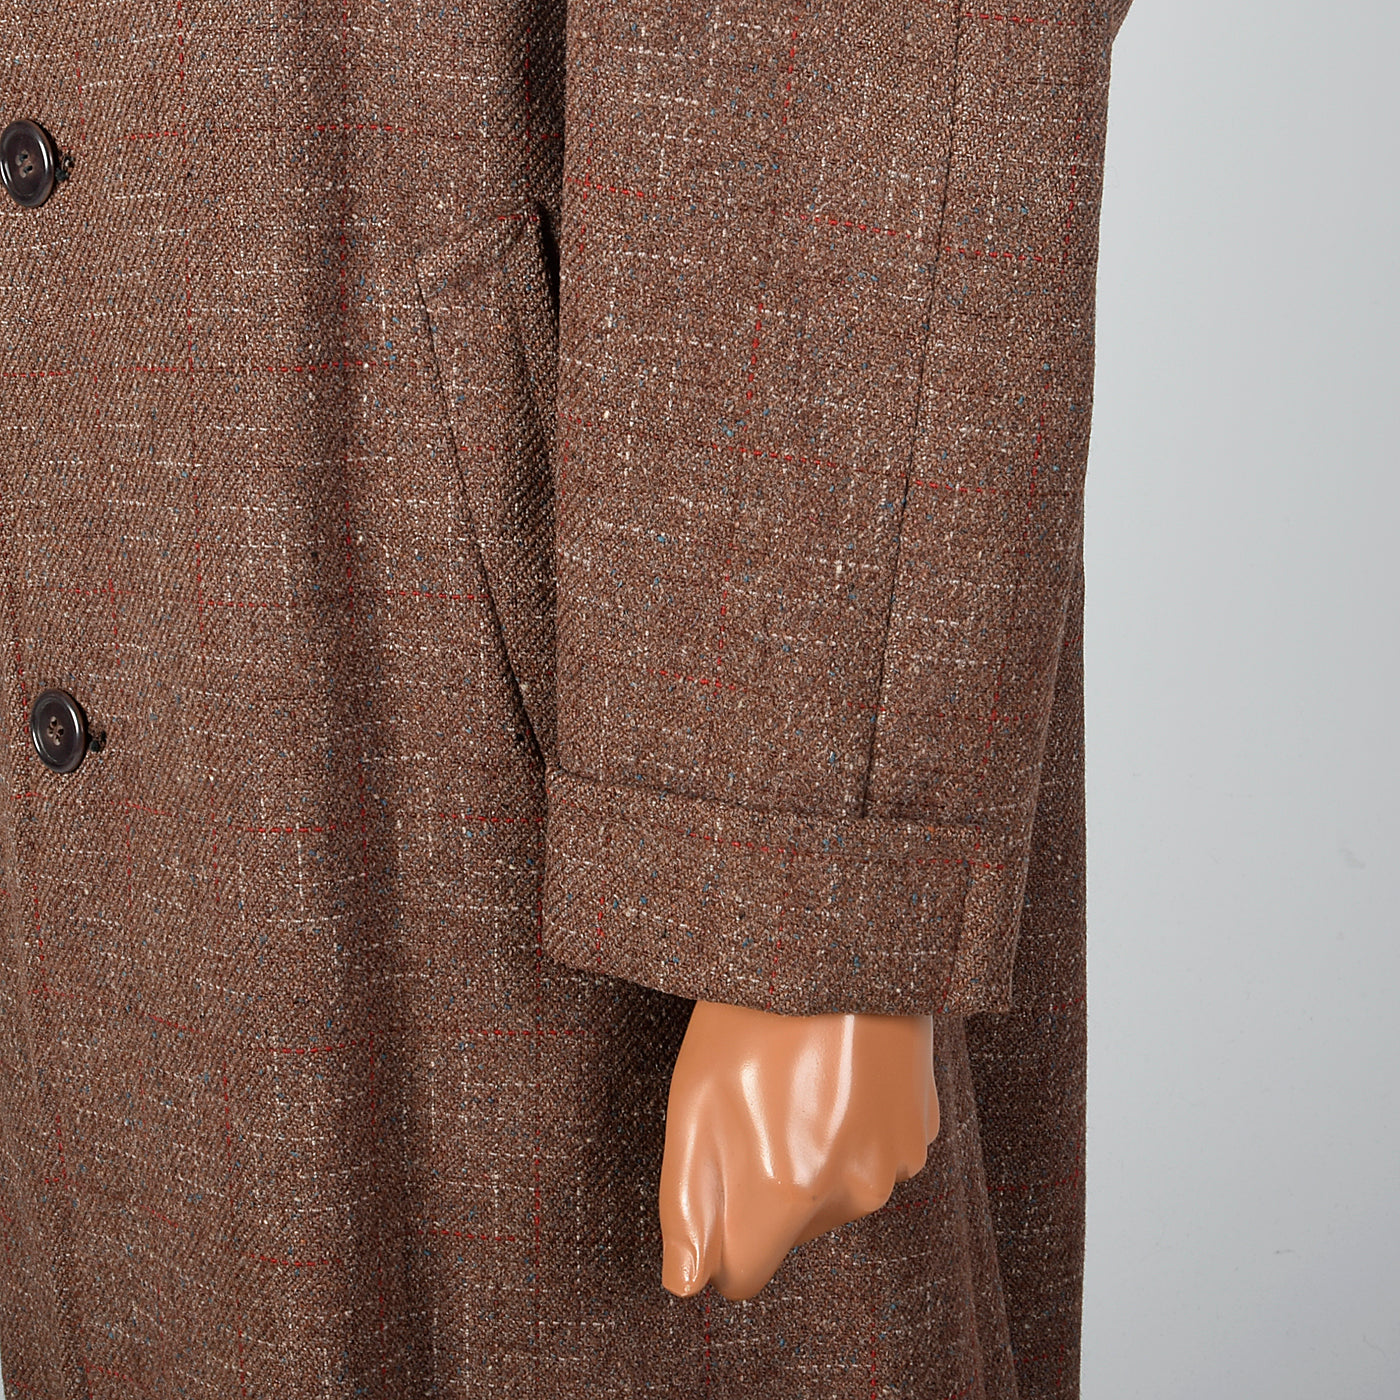 1950s Men's Brown Atomic Fleck Wool Overcoat